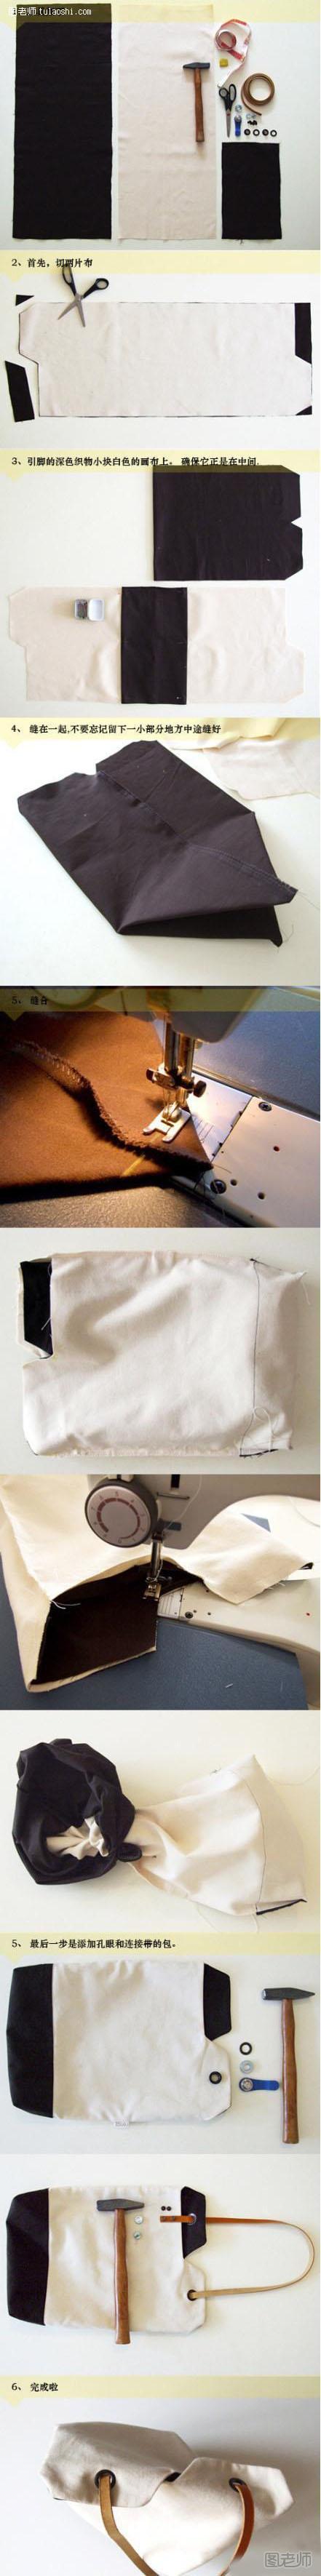 简洁简易的手提袋手工制作diy图解